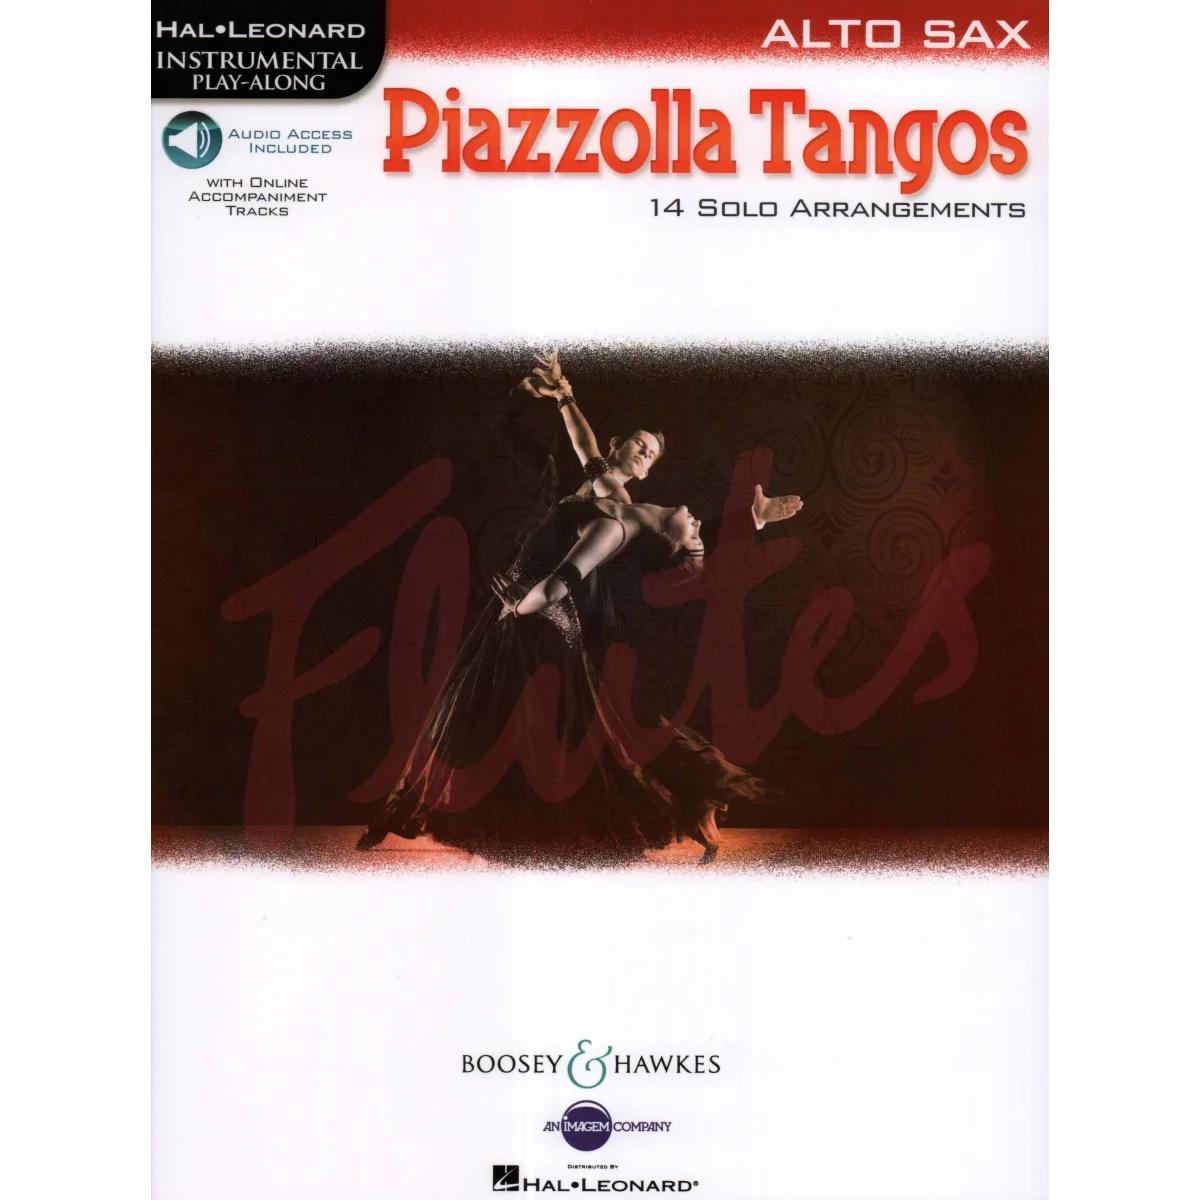 Piazzolla Tangos for Alto Saxophone